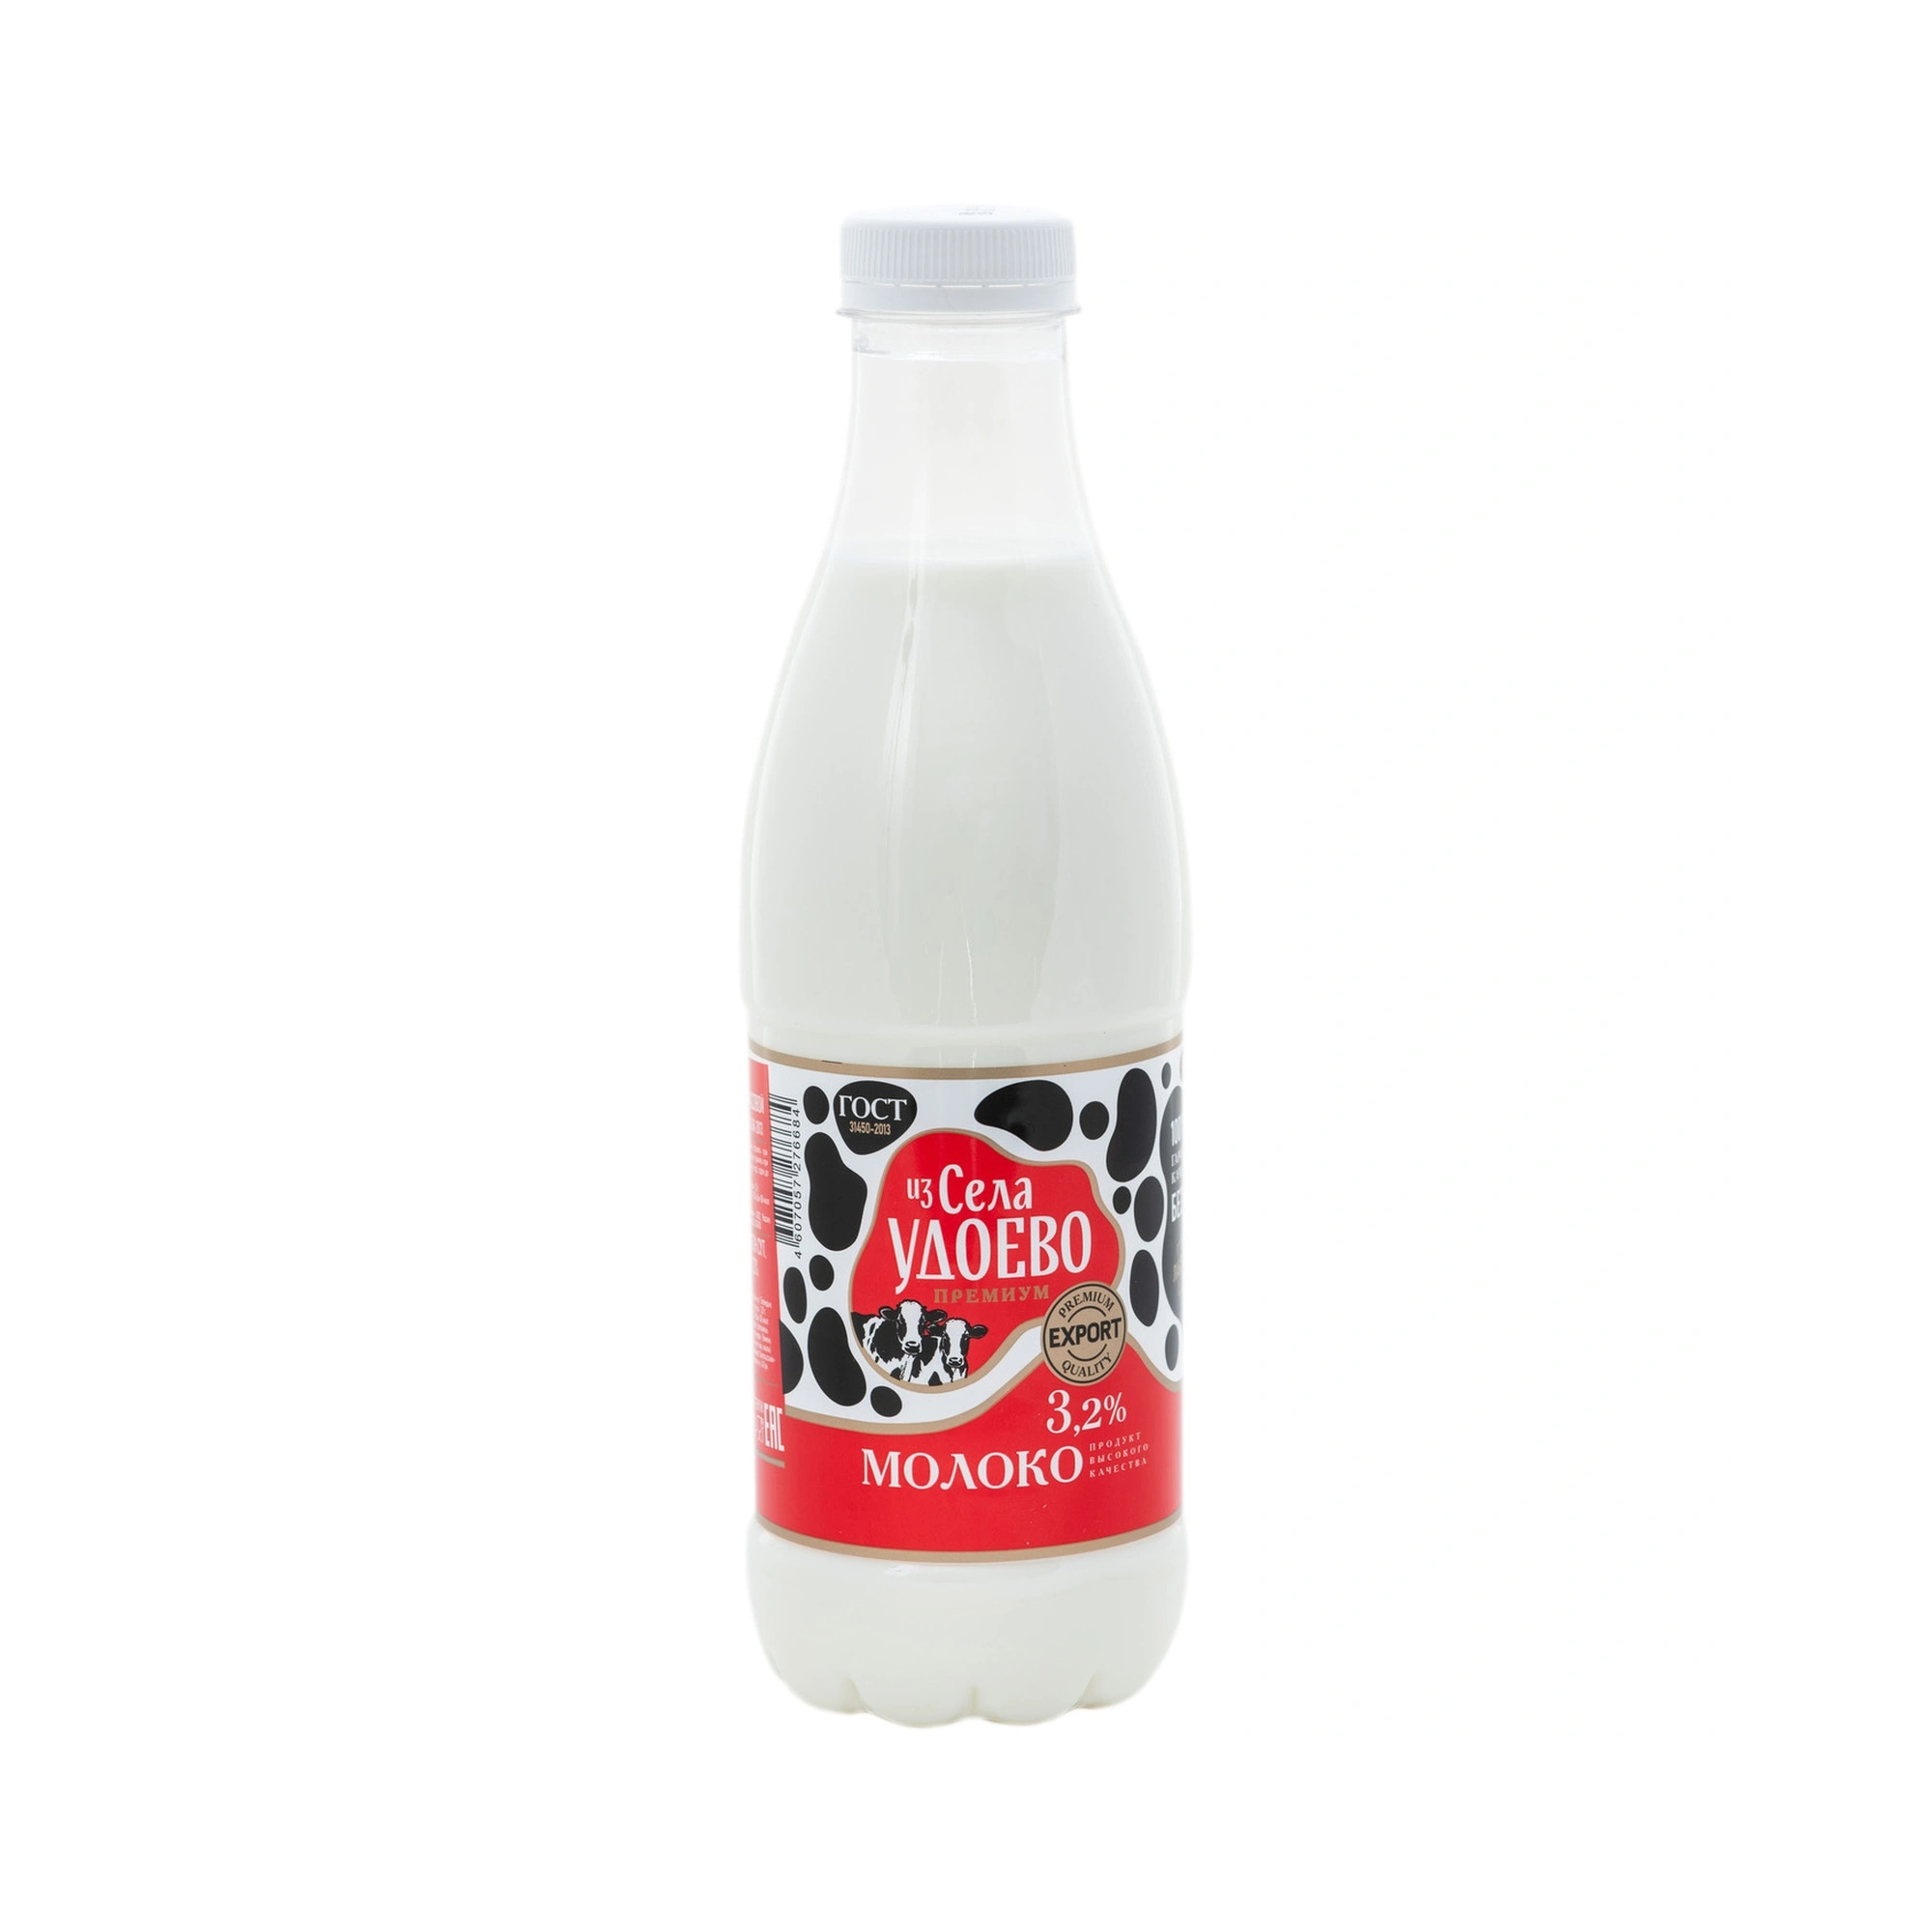 Молоко Из Села Удоево пастеризованное 3,2%, 835 г